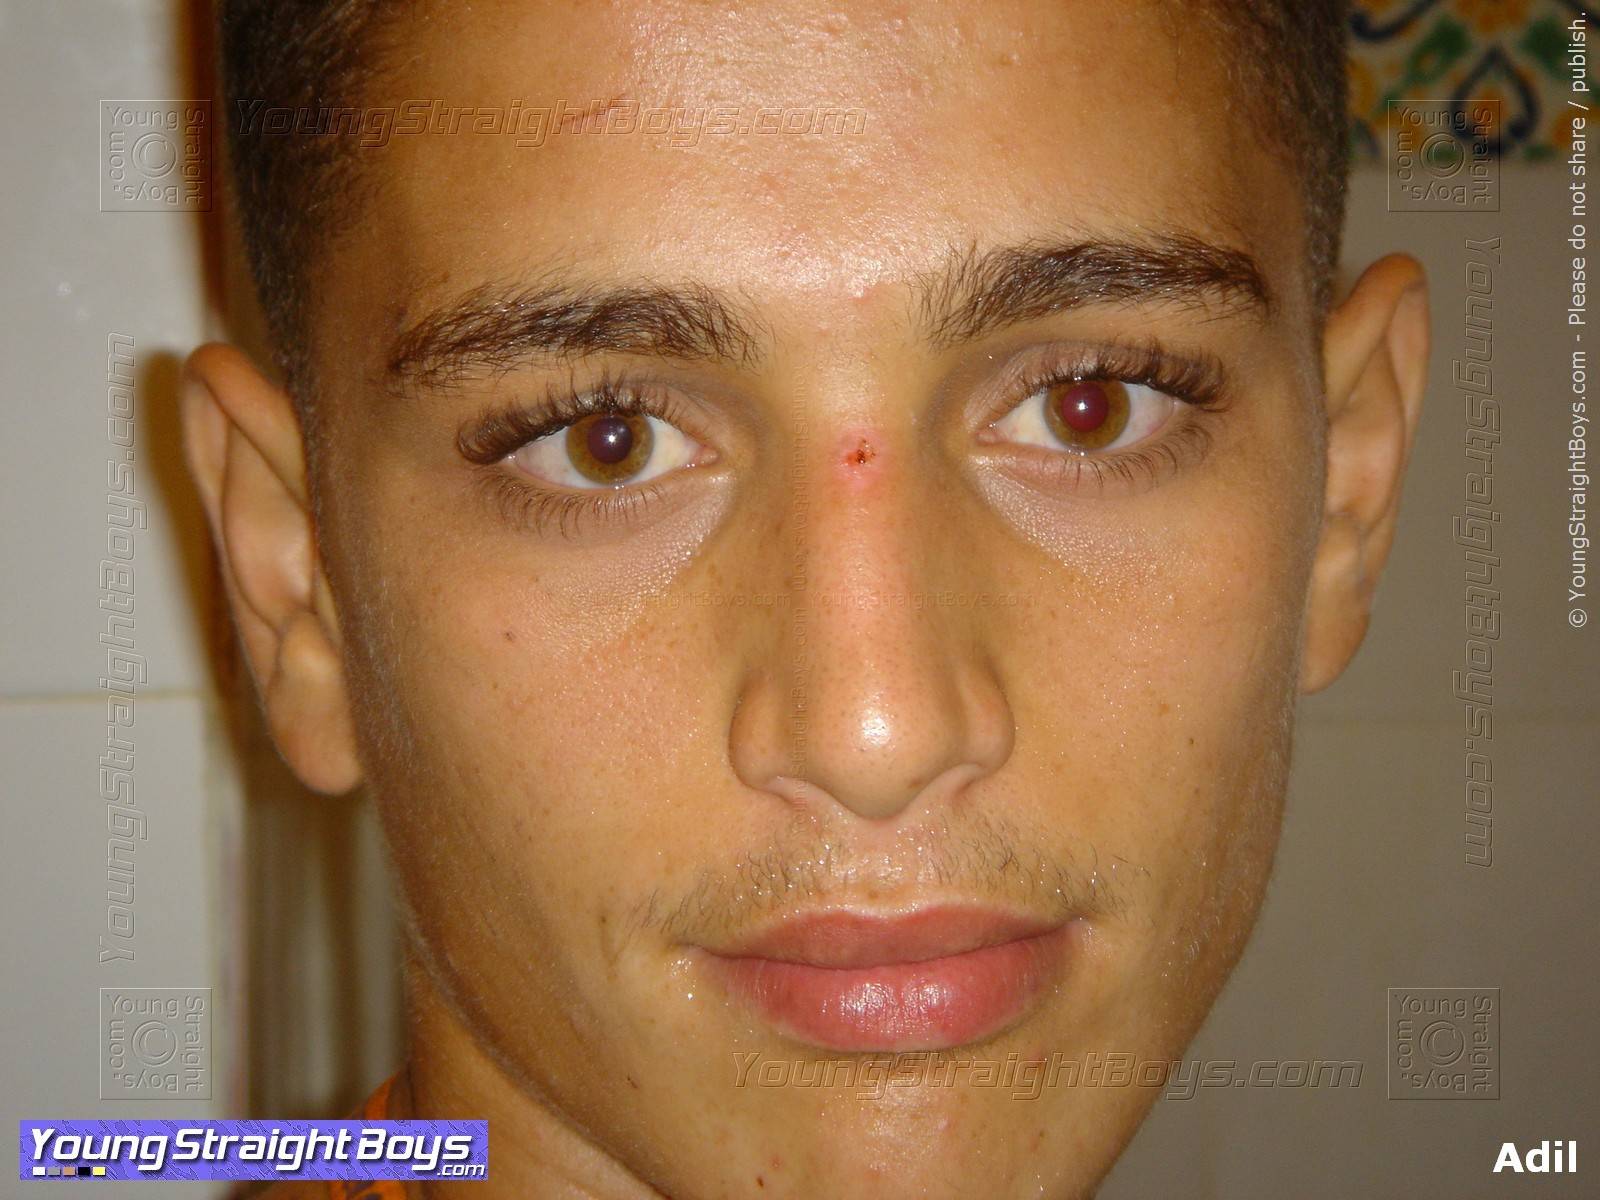 Hübscher arabischer heterosexueller Junge Adil Gesichtsbild